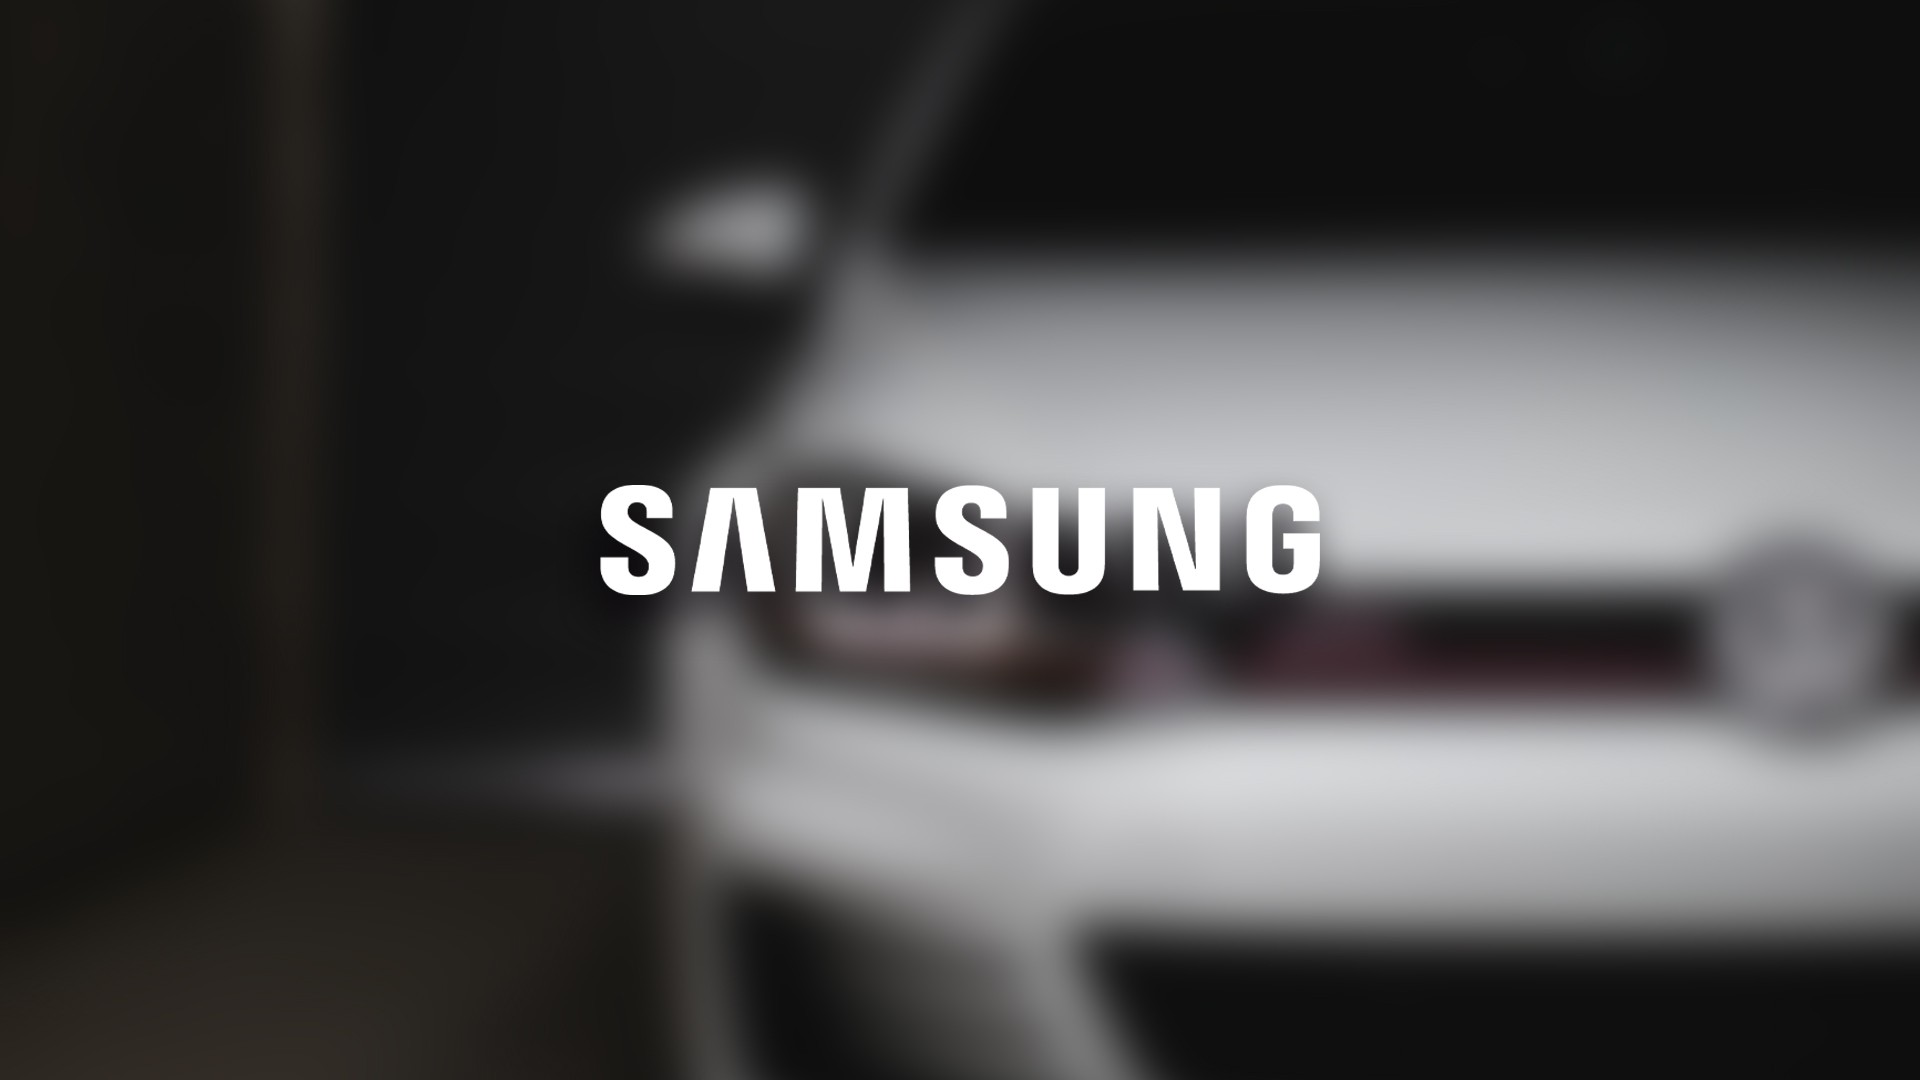 Samsung anuncia chips para carros inteligentes com 5G e IA; Volkswagen utilizar o Exynos Auto V7